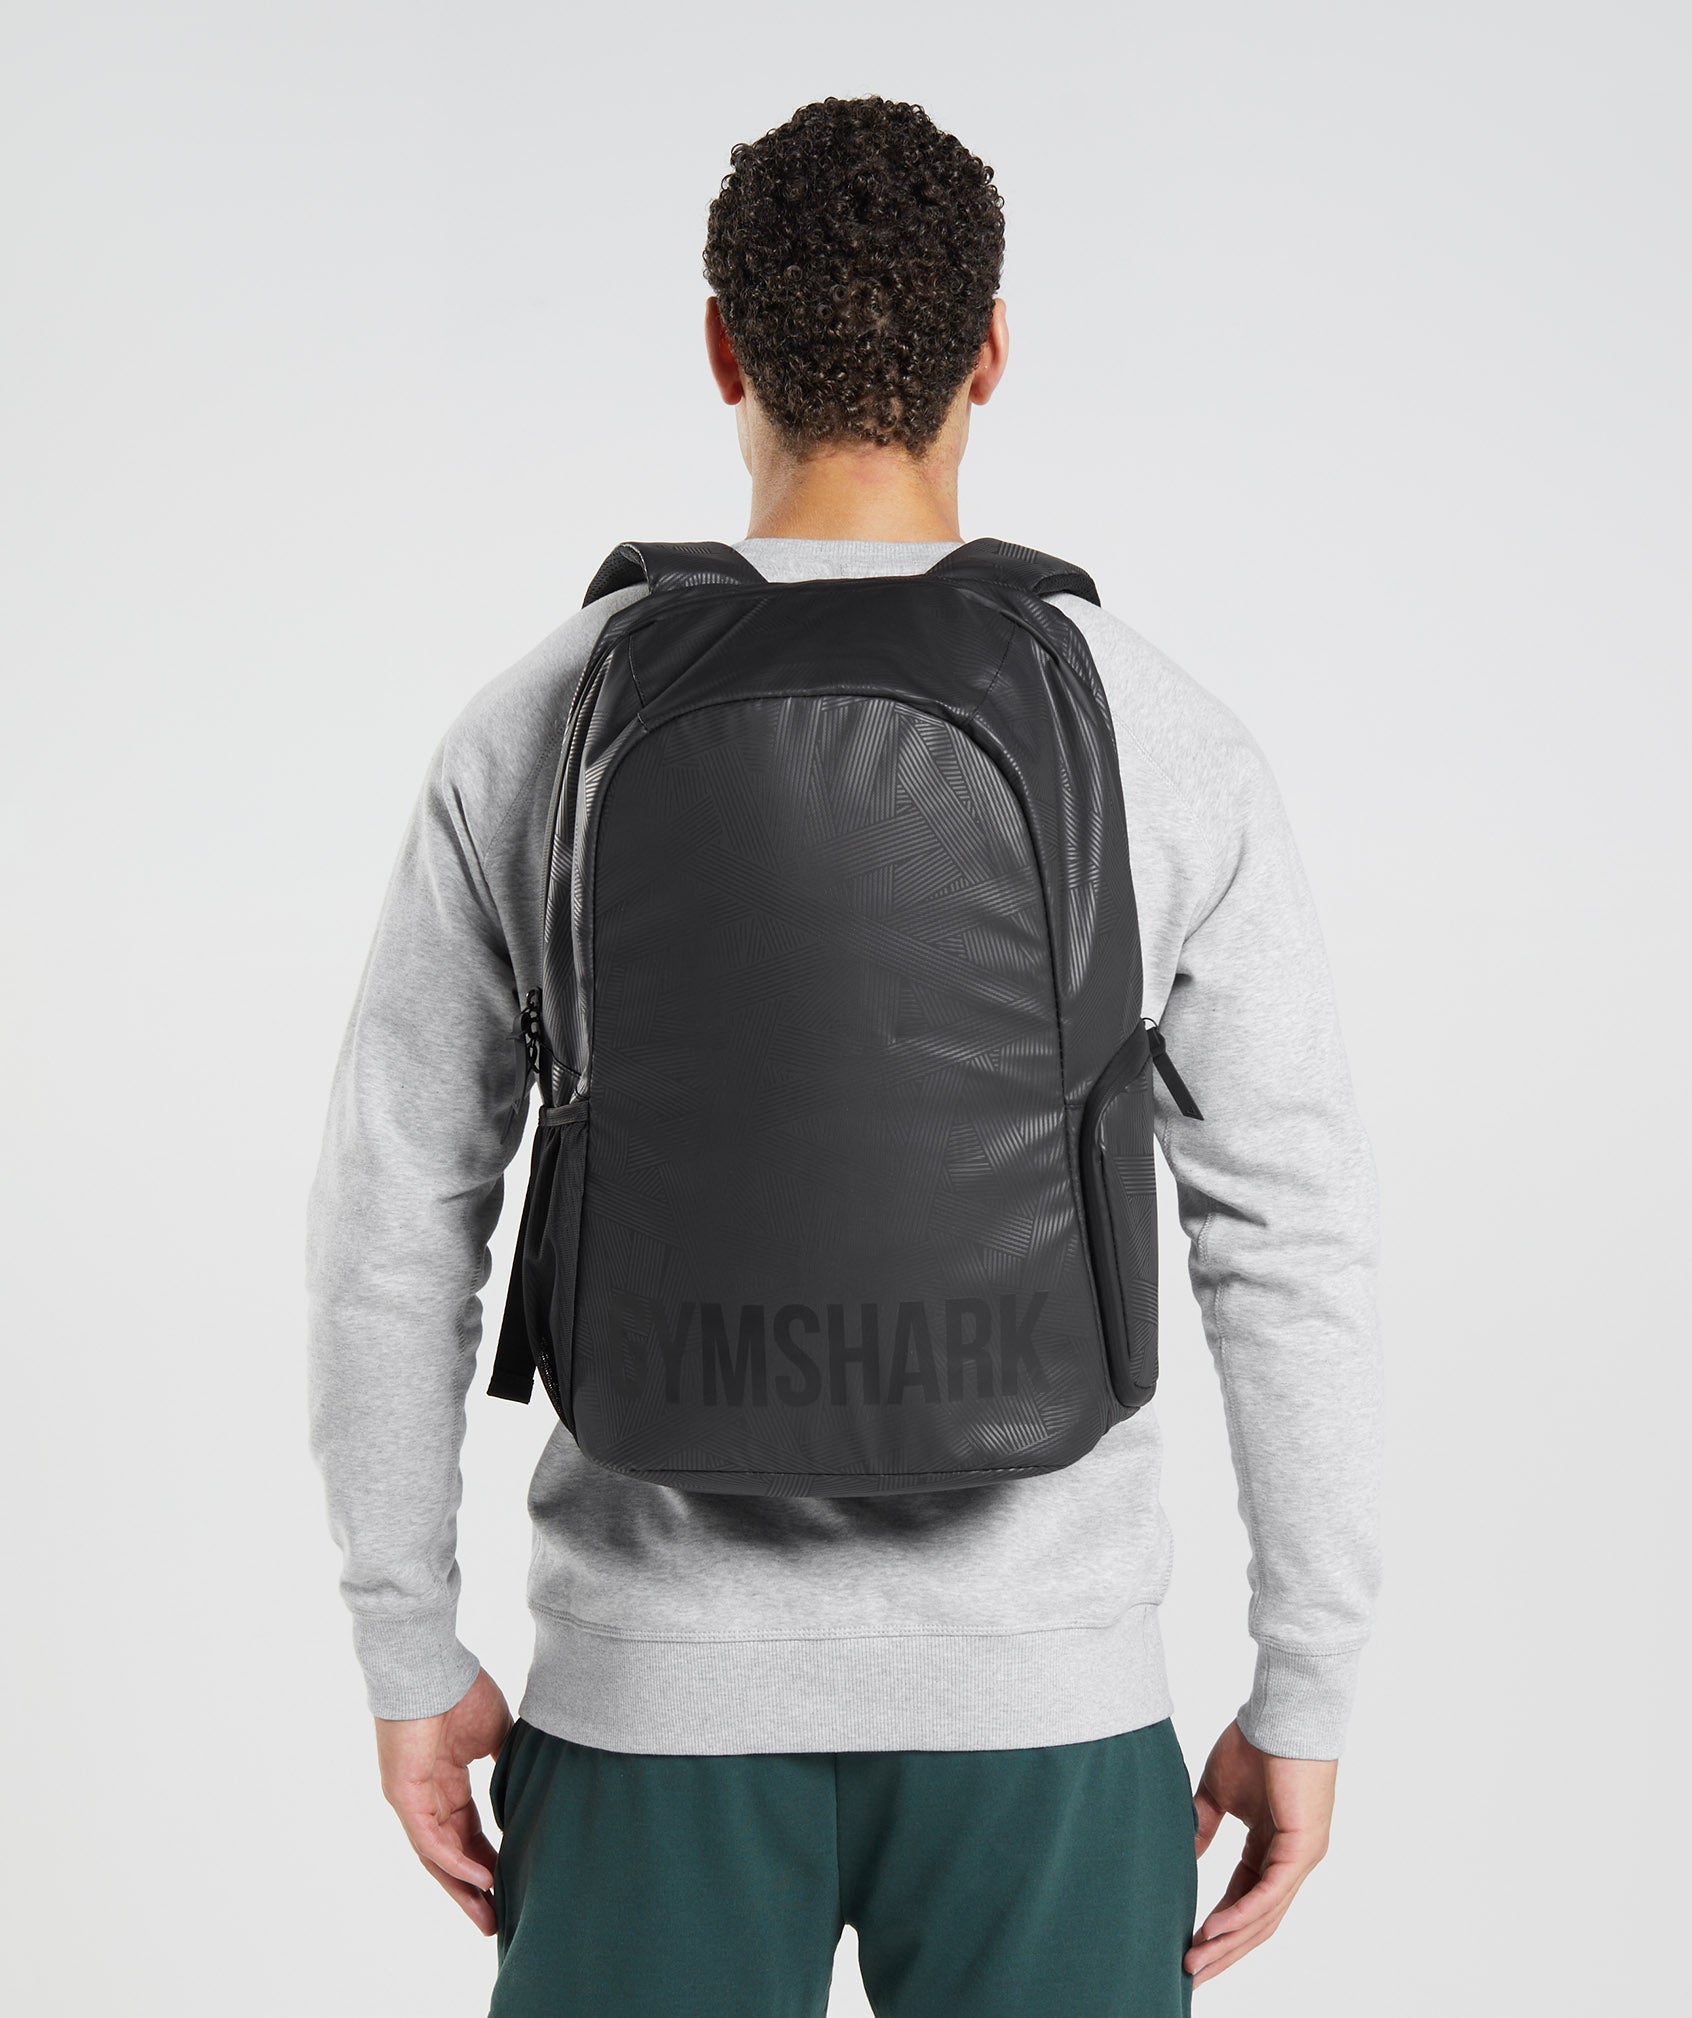 X-Series 0.1 Backpack in Black Print - view 4